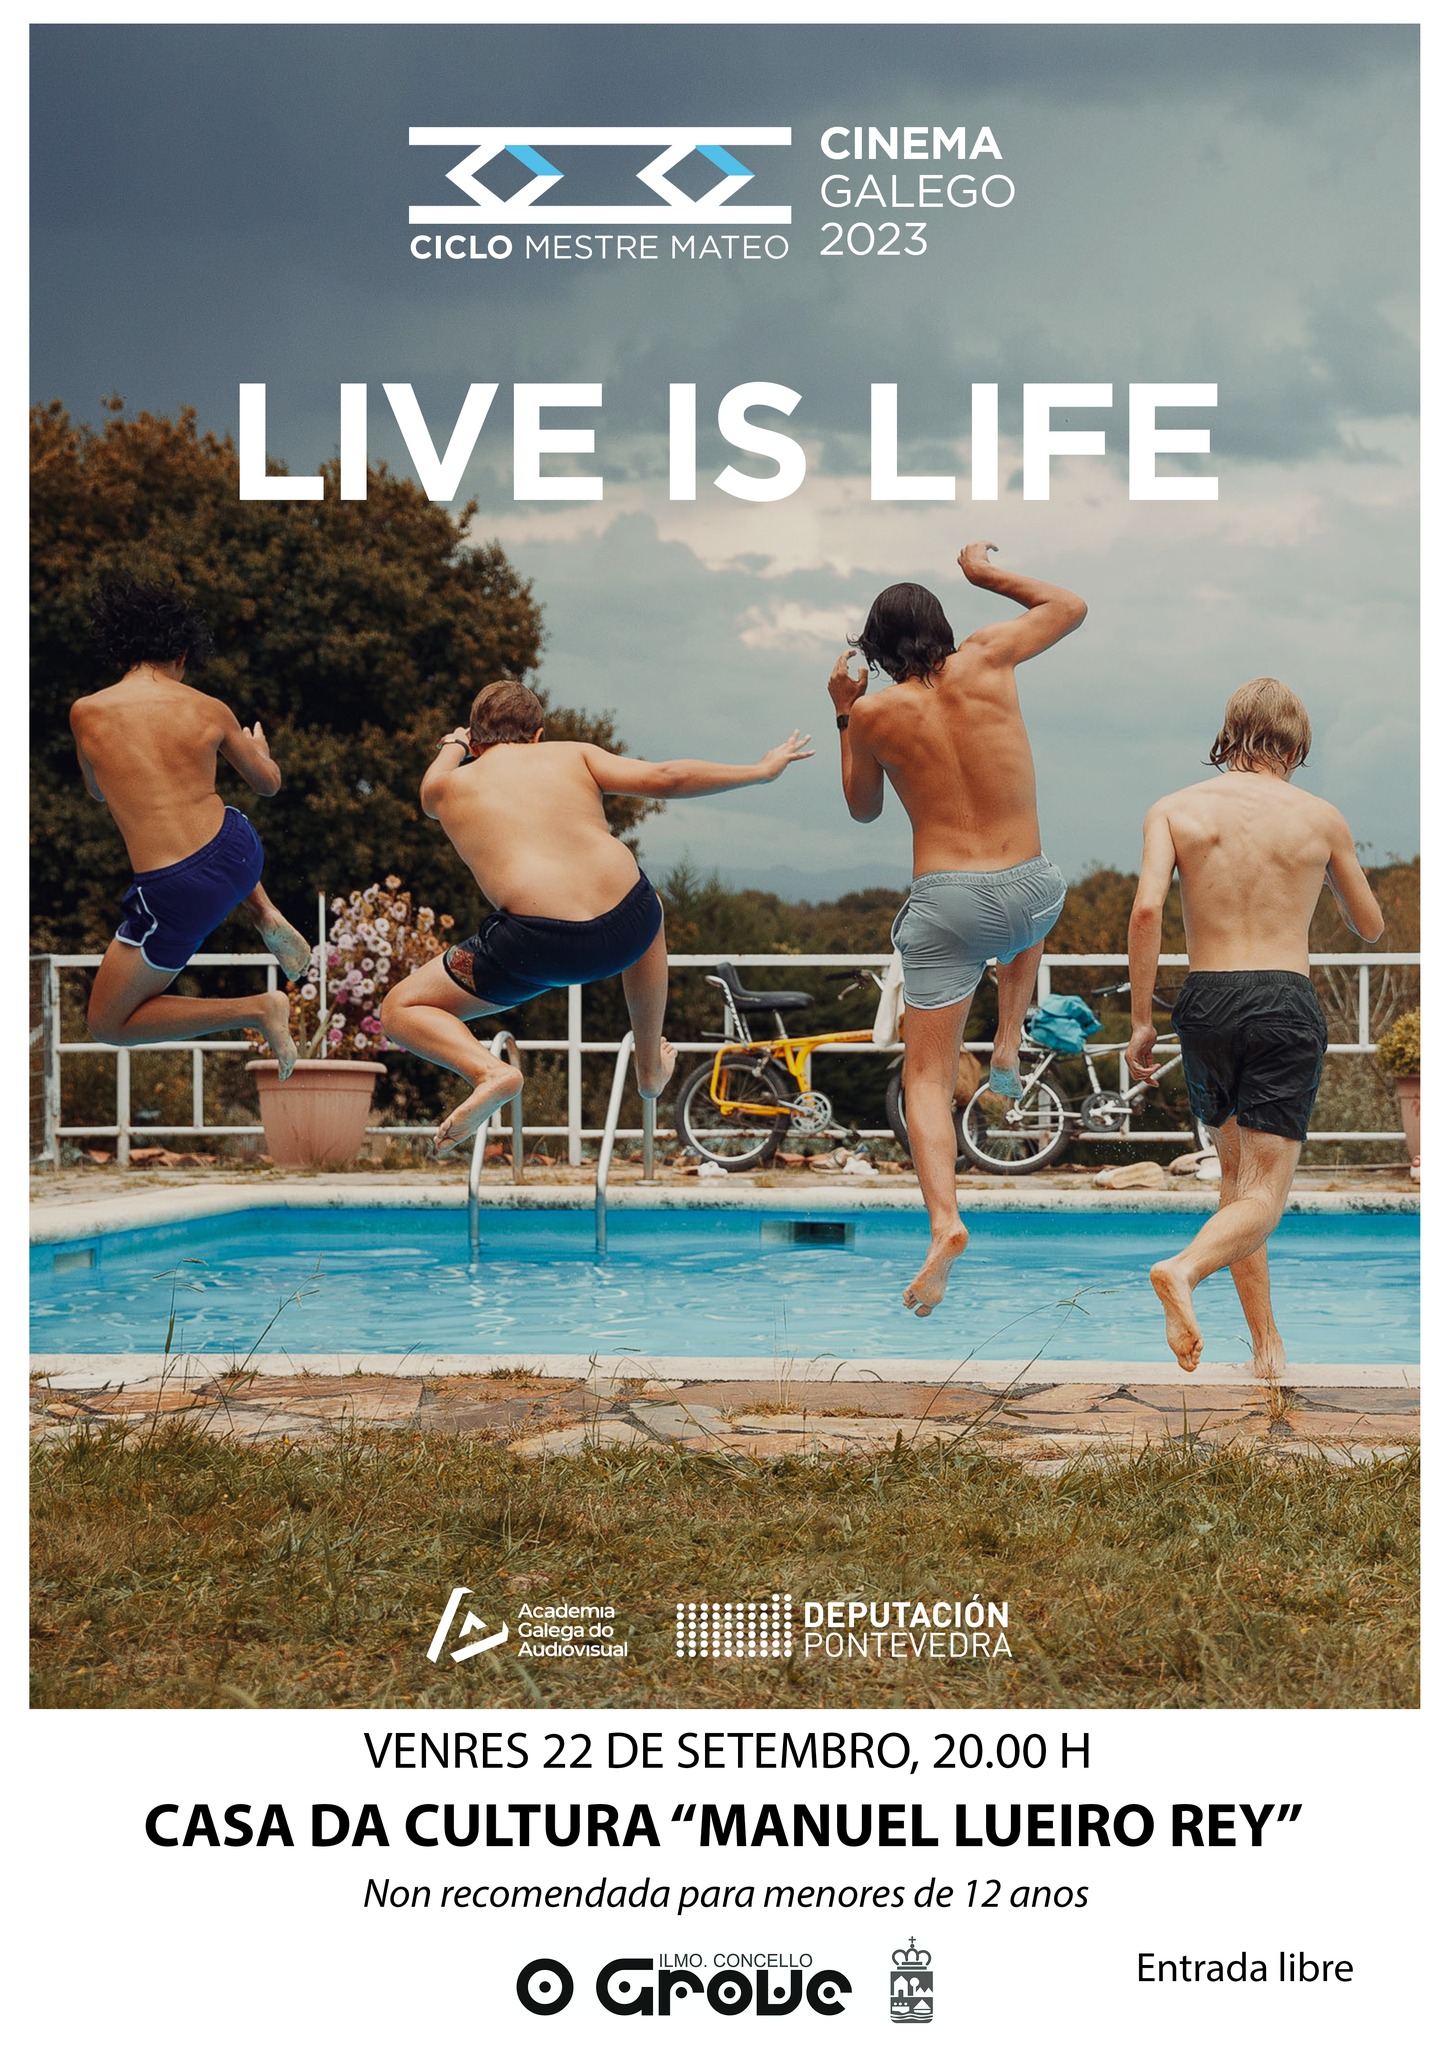 Live is life. Ciclo de cine galego Mestre Mateo